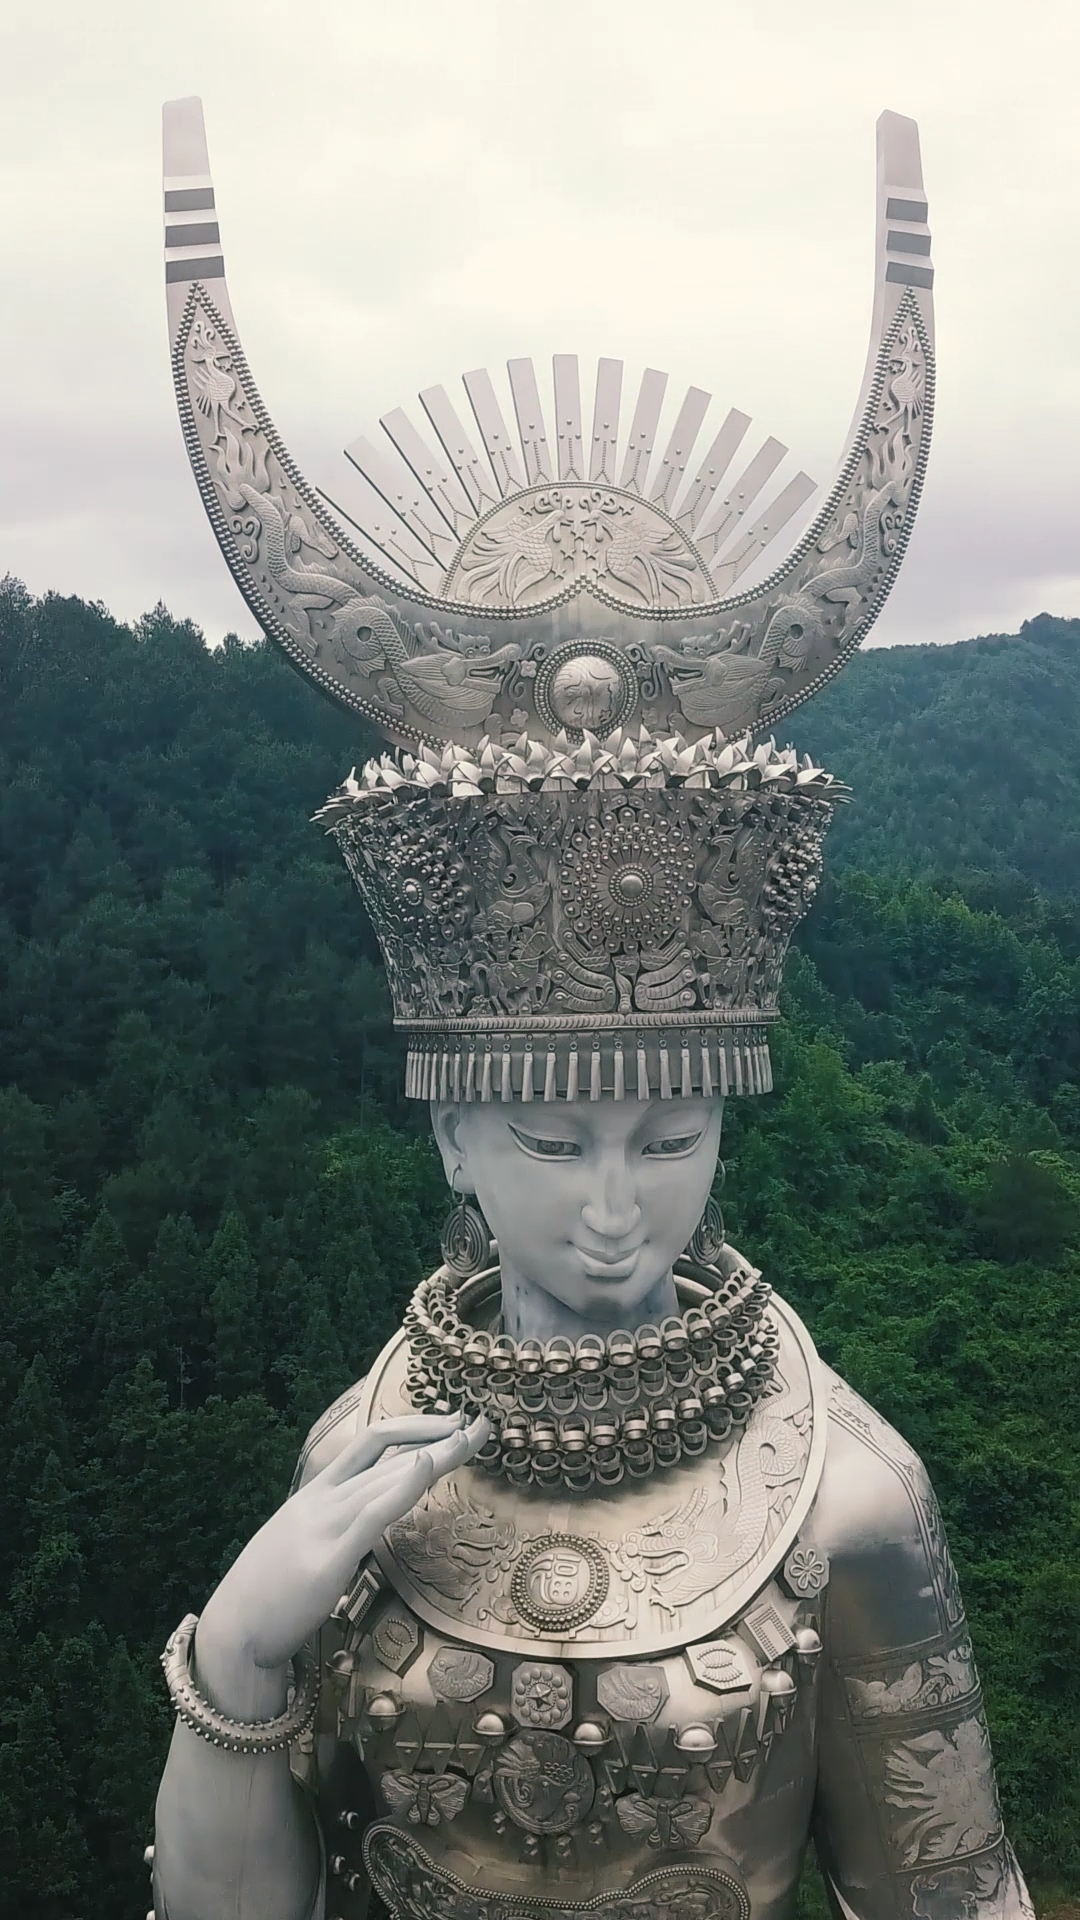 贵州剑河县有座世界上最大的女神像,苗族女神,仰阿莎雕像